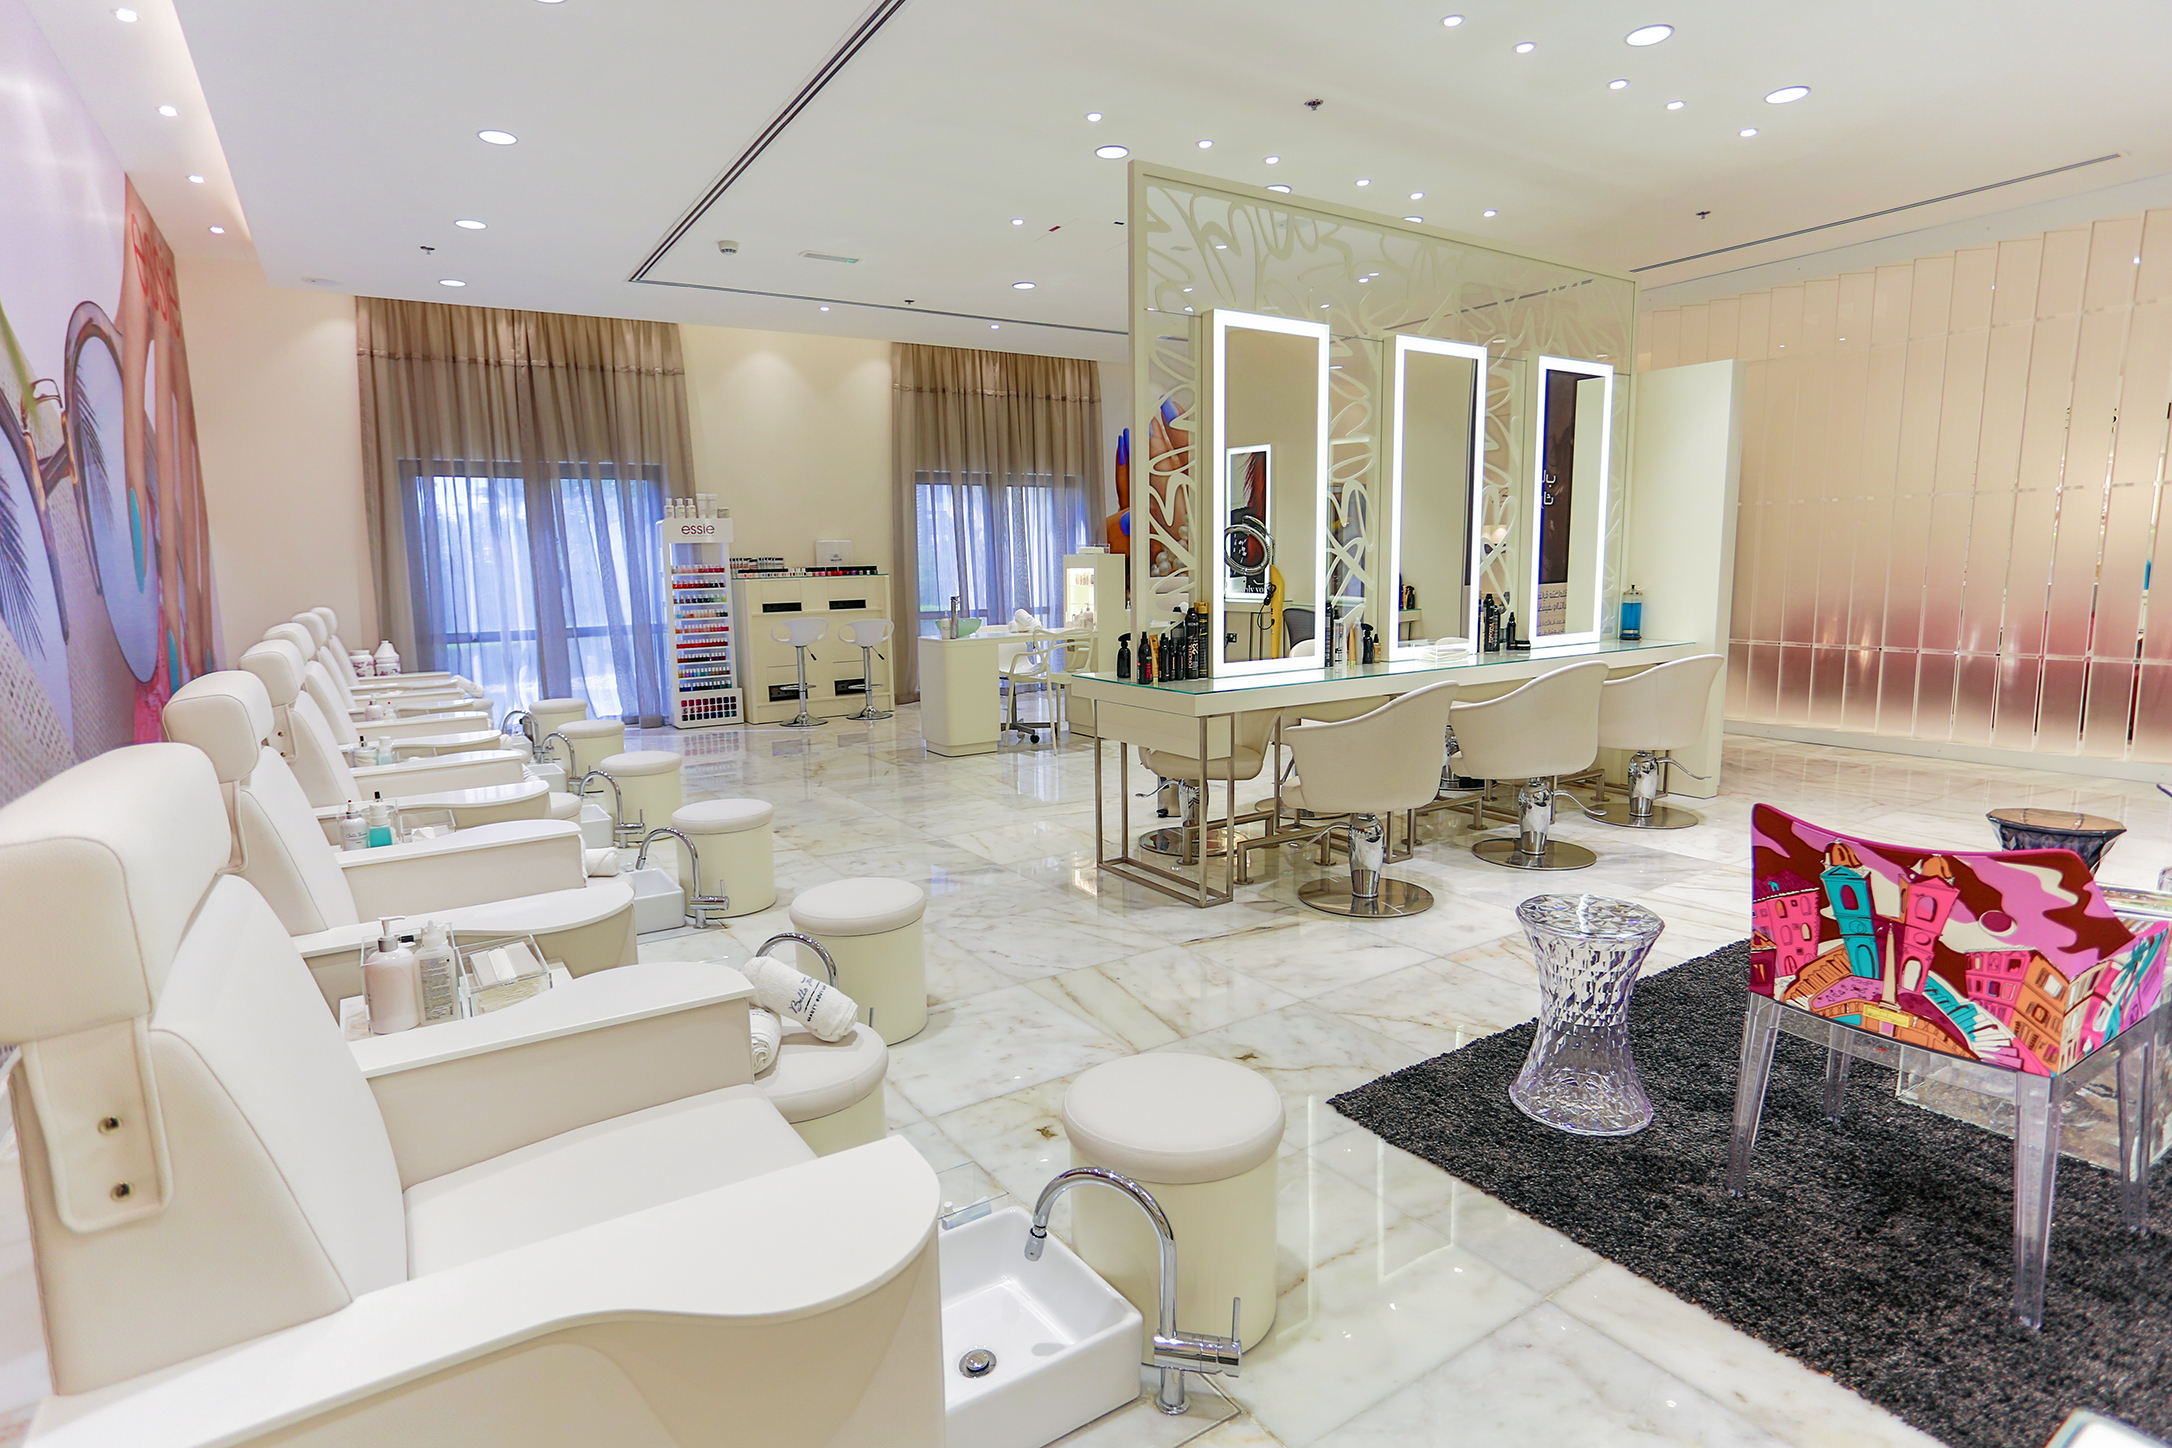 Bridal Beauty Review: The Nail Spa & Marquee, Dubai - Bride Club Me